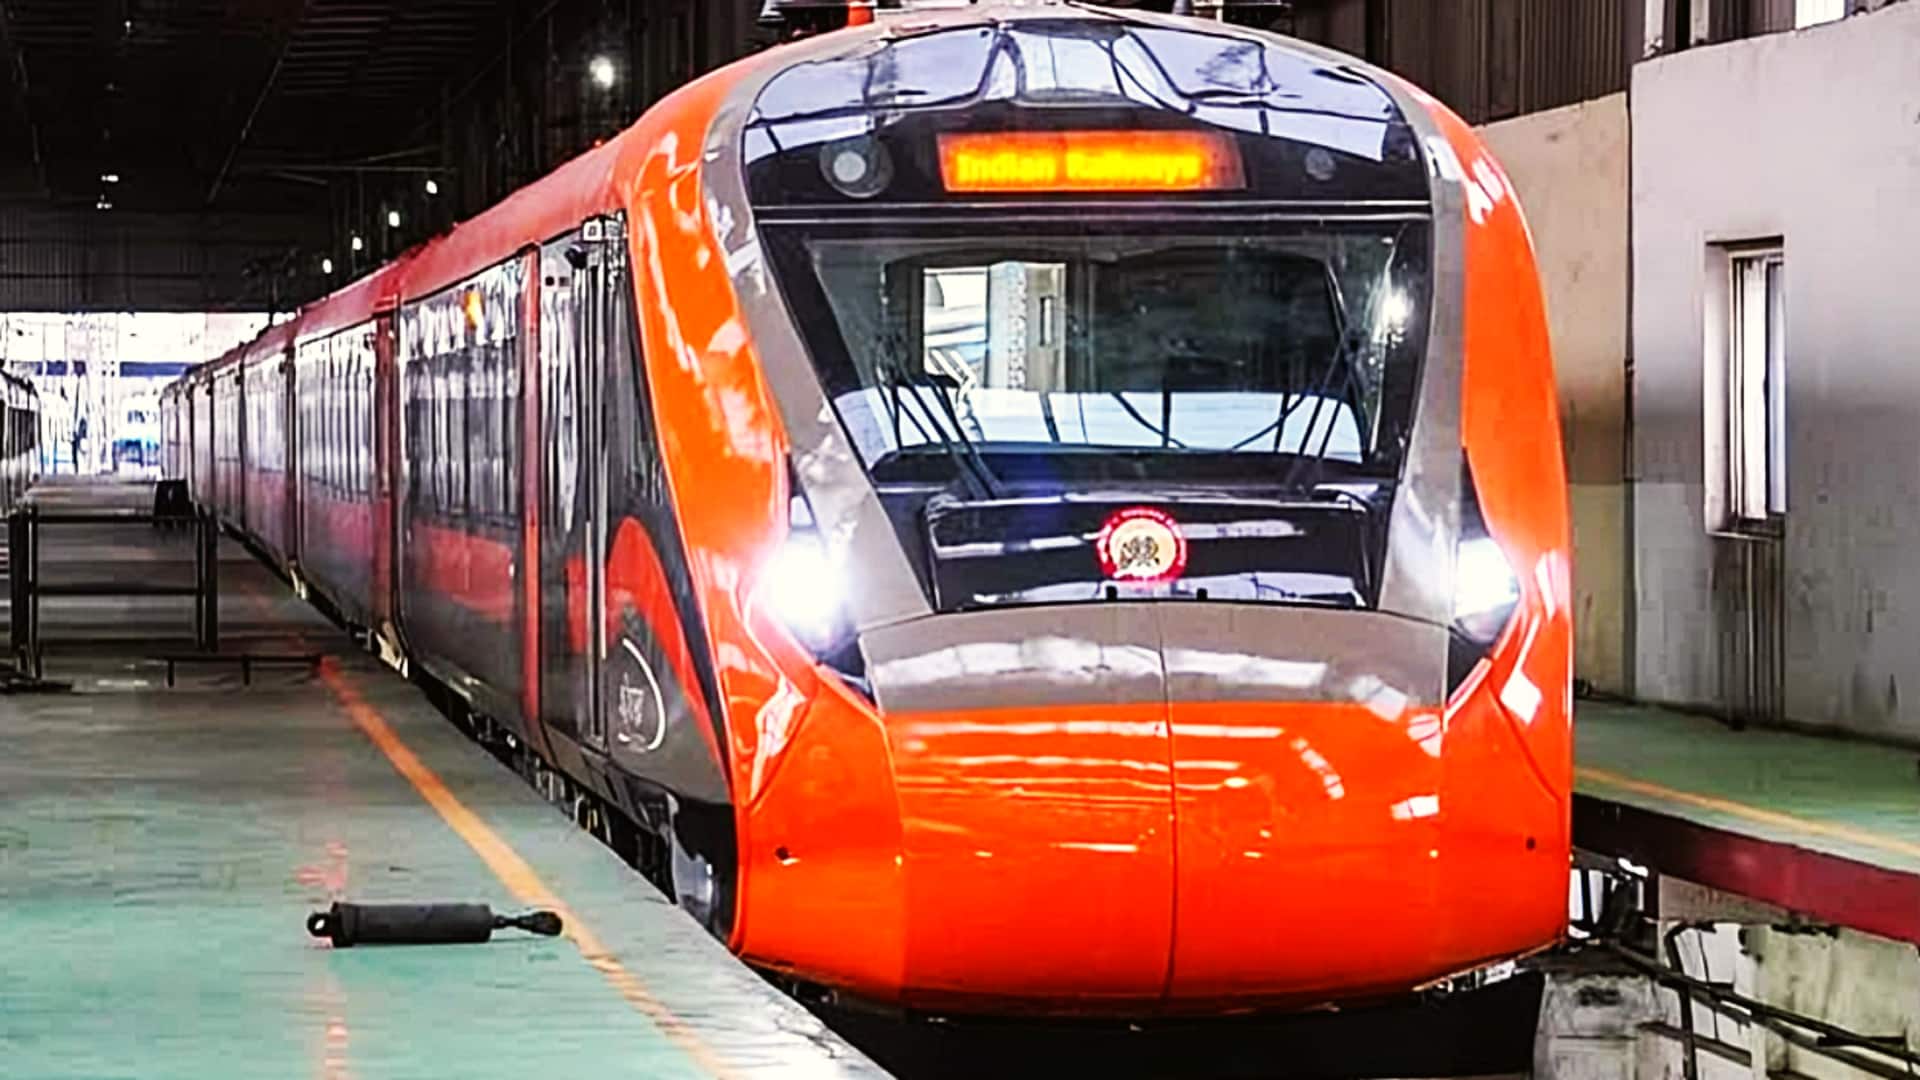 वंदे भारत मेट्रो की पहली झलक सामने आई, जुलाई में शुरू होगा ट्रायल